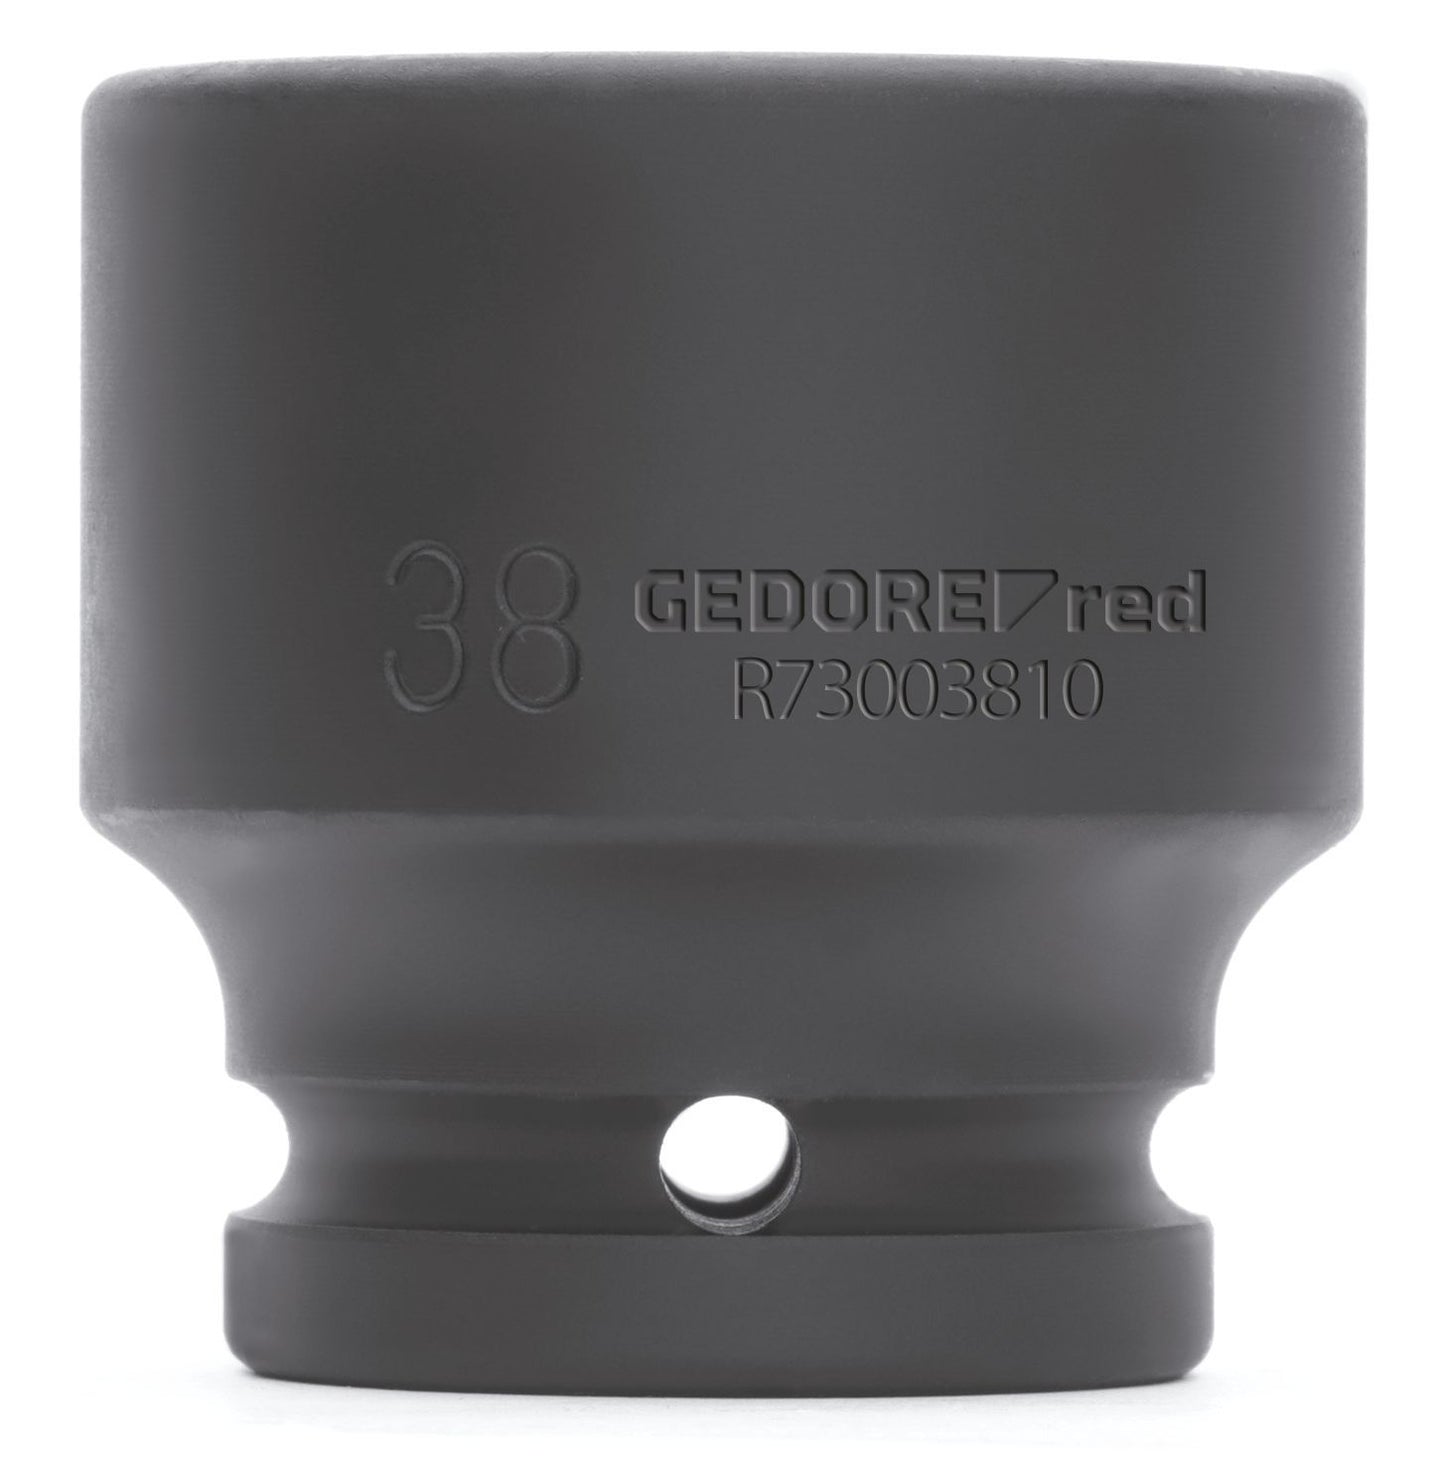 GEDORE red R73002409 - Vaso de impacto 3/4", hexagonal, 24 mm L=50 mm (3300595)